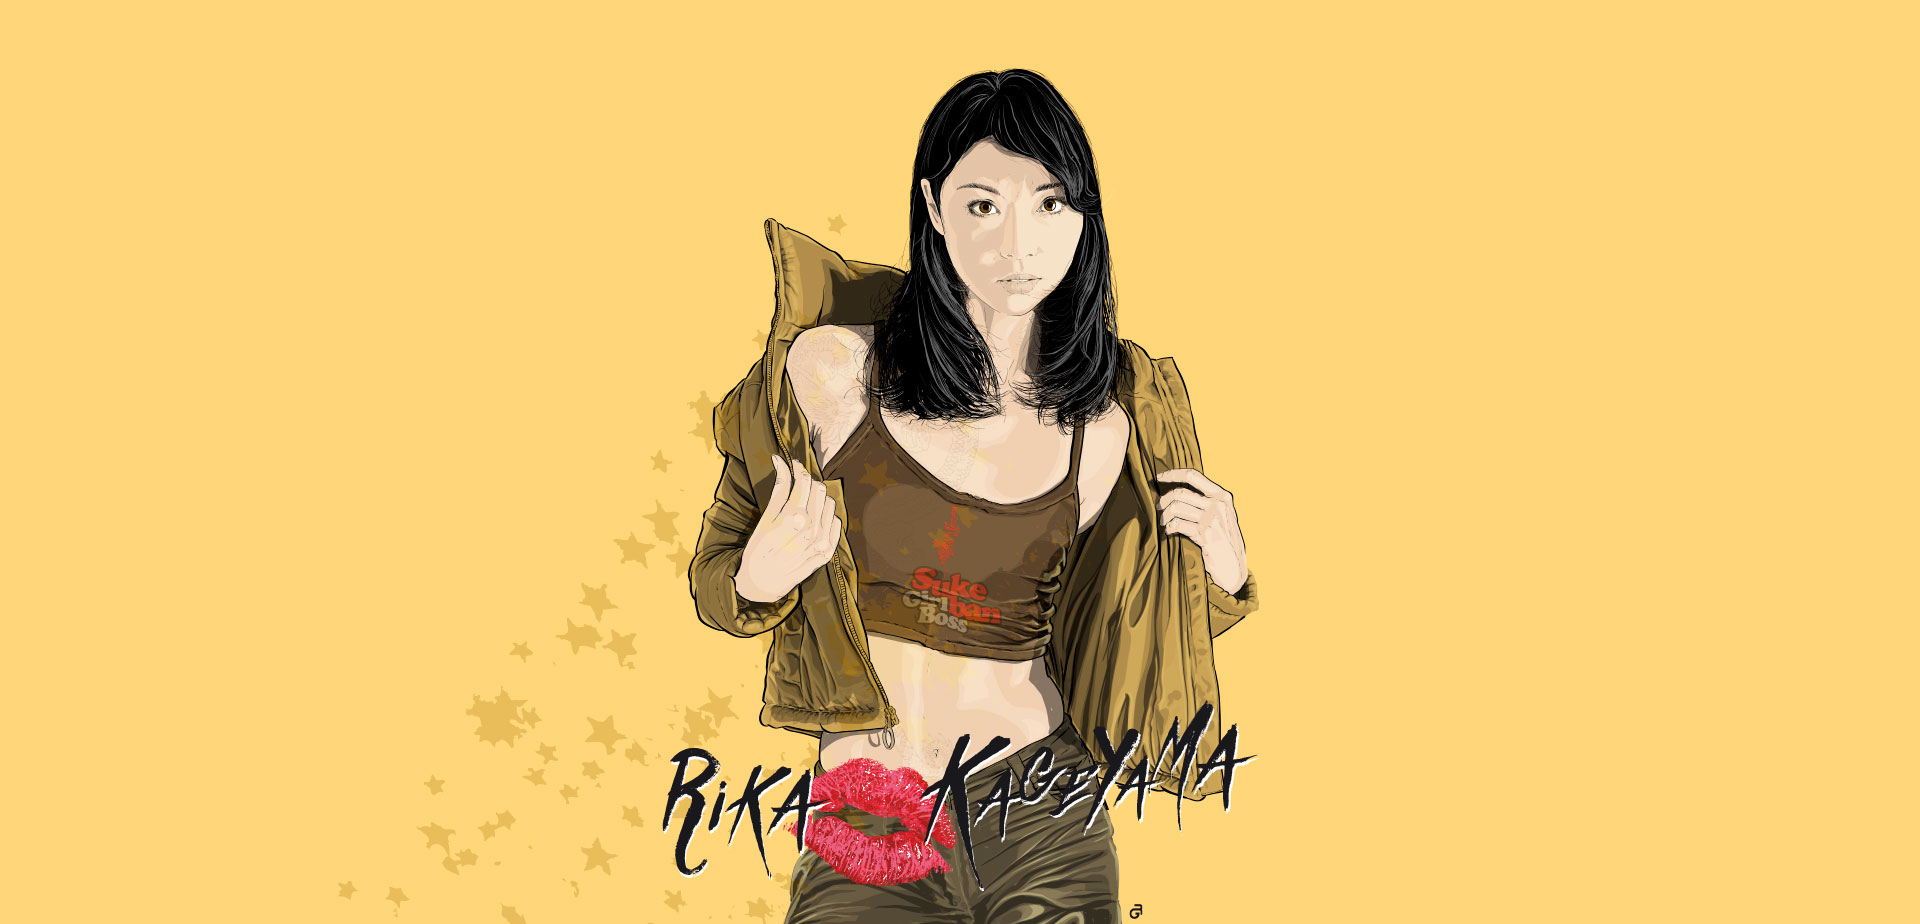 Reiko Oshida como "Rika Kageyama" para Amazon et Machina.